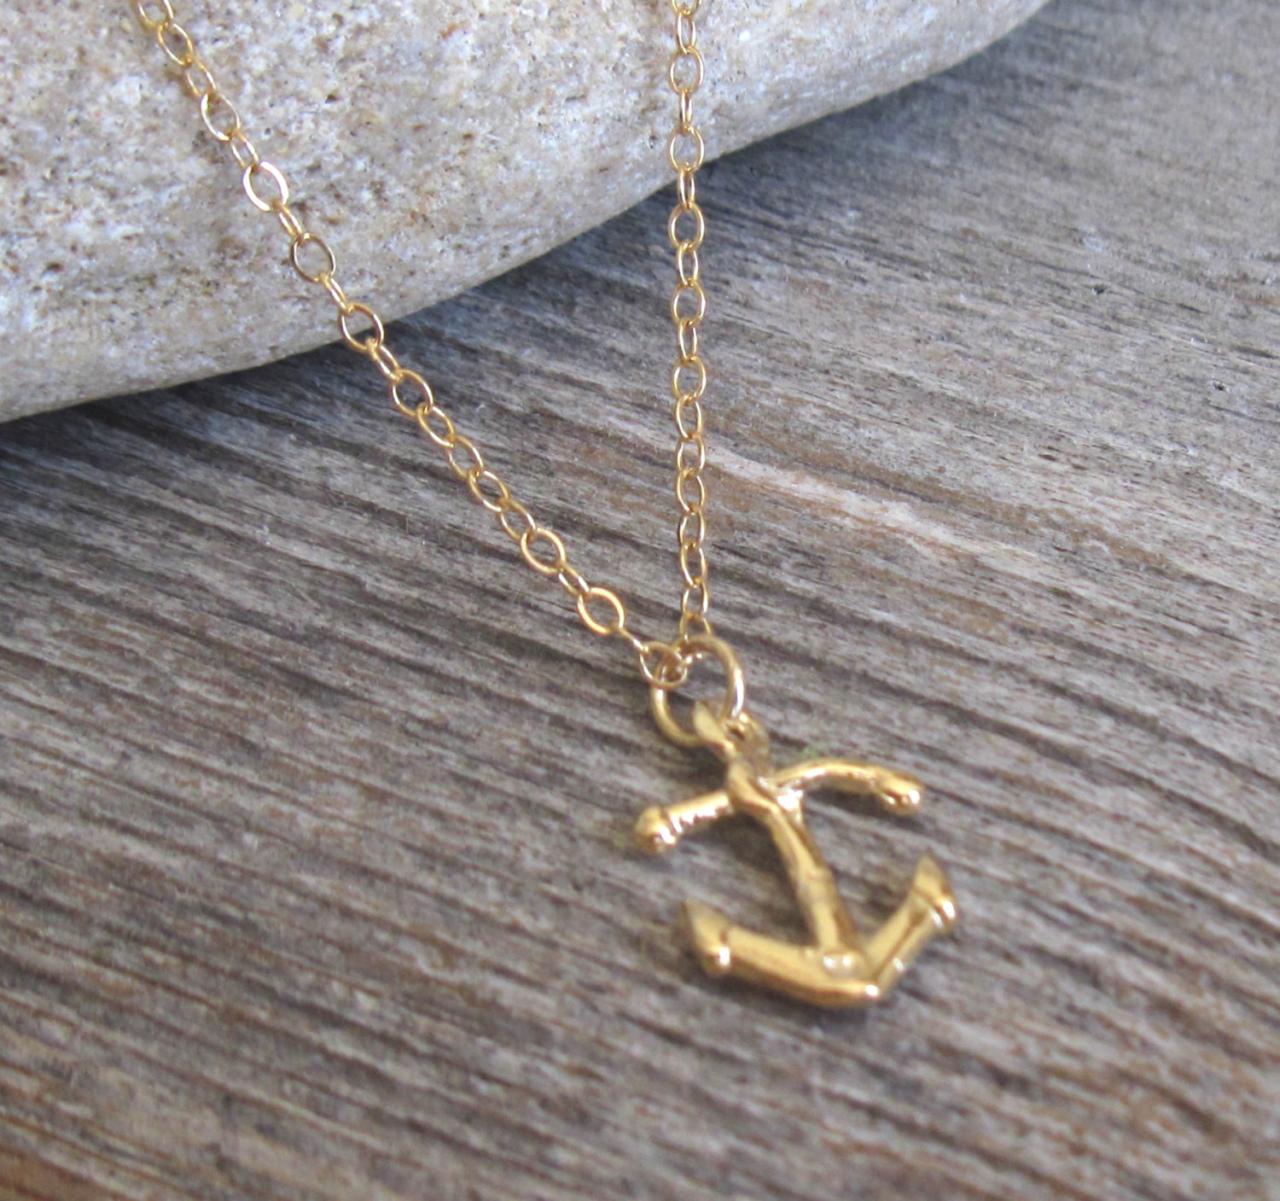 Men's Necklace - Men's Anchor Necklace - Men's Gold Necklace - Men's Jewelry - Men's Gift -